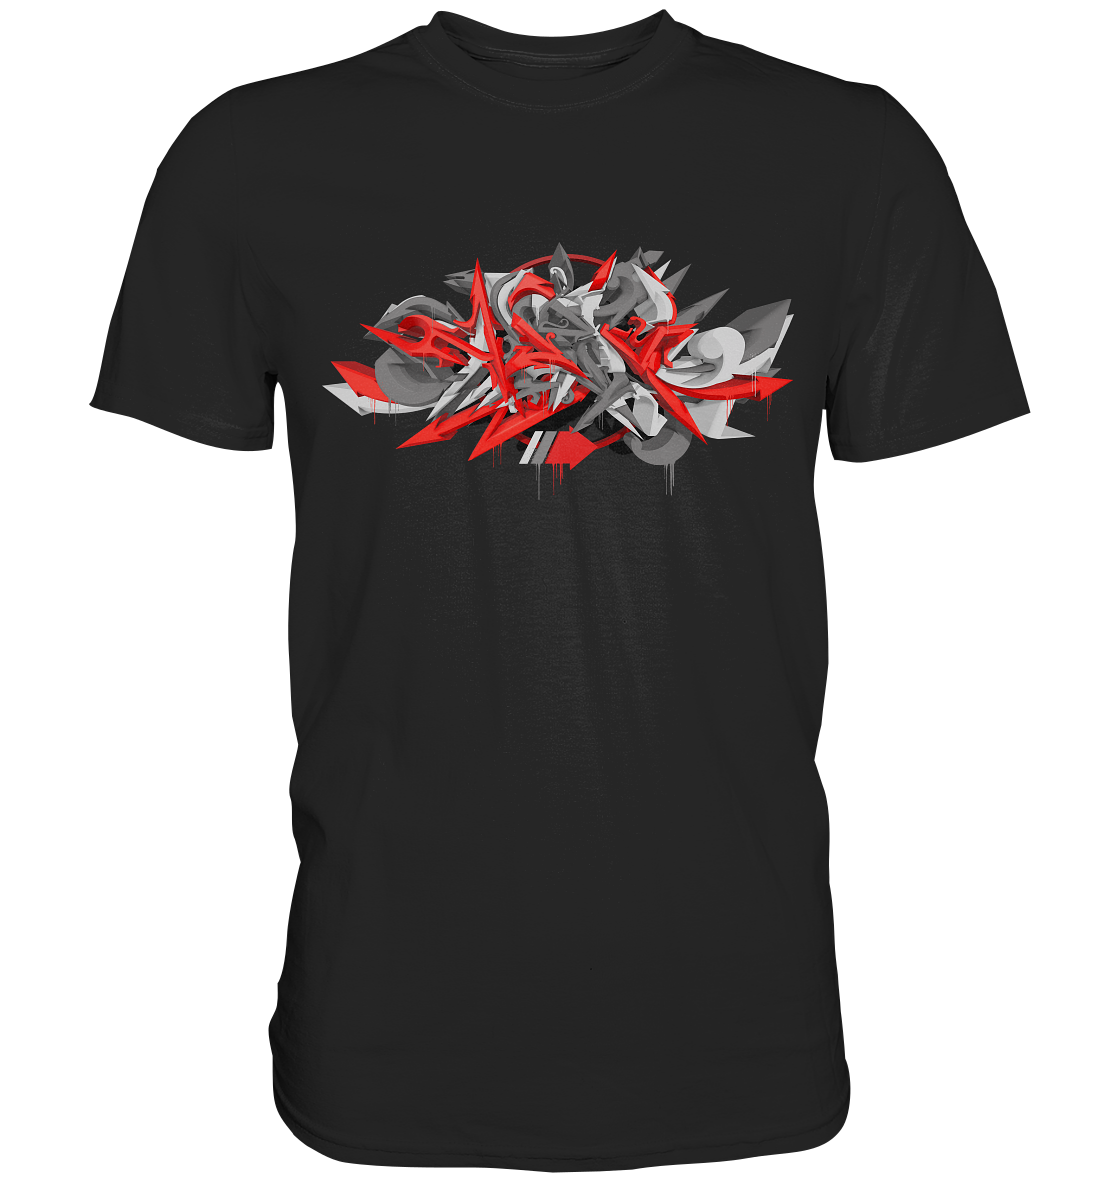 Turbo Graffiti Red Style - Premium Shirt